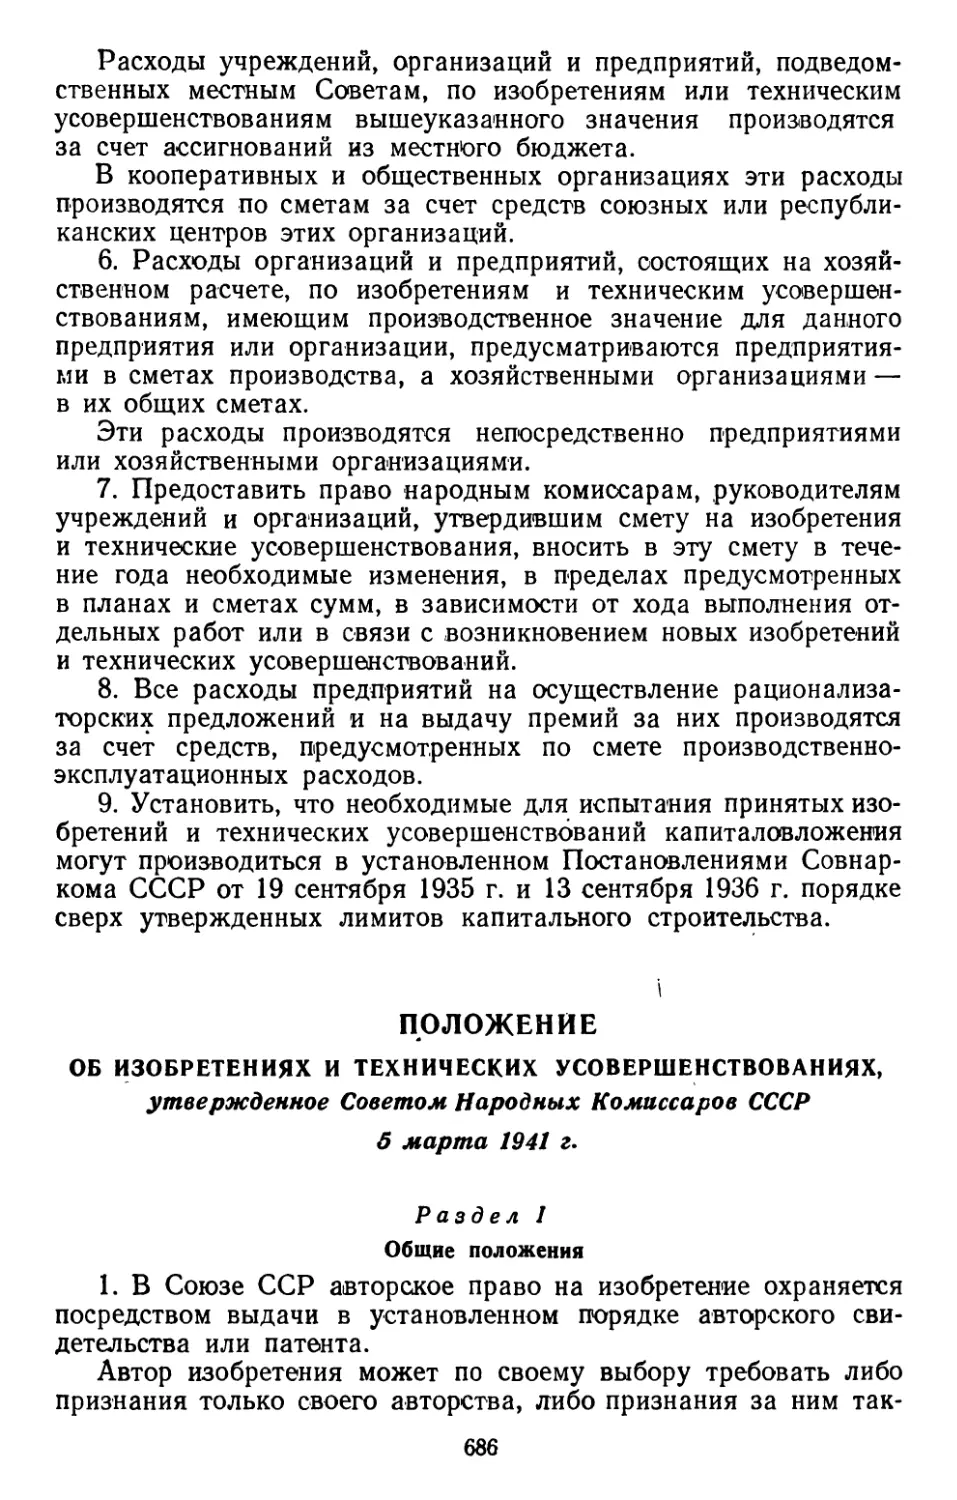 Положение об изобретениях и технических усовершенствованиях, утвержденное Советом Народных Комиссаров СССР, 5 марта 1941 г